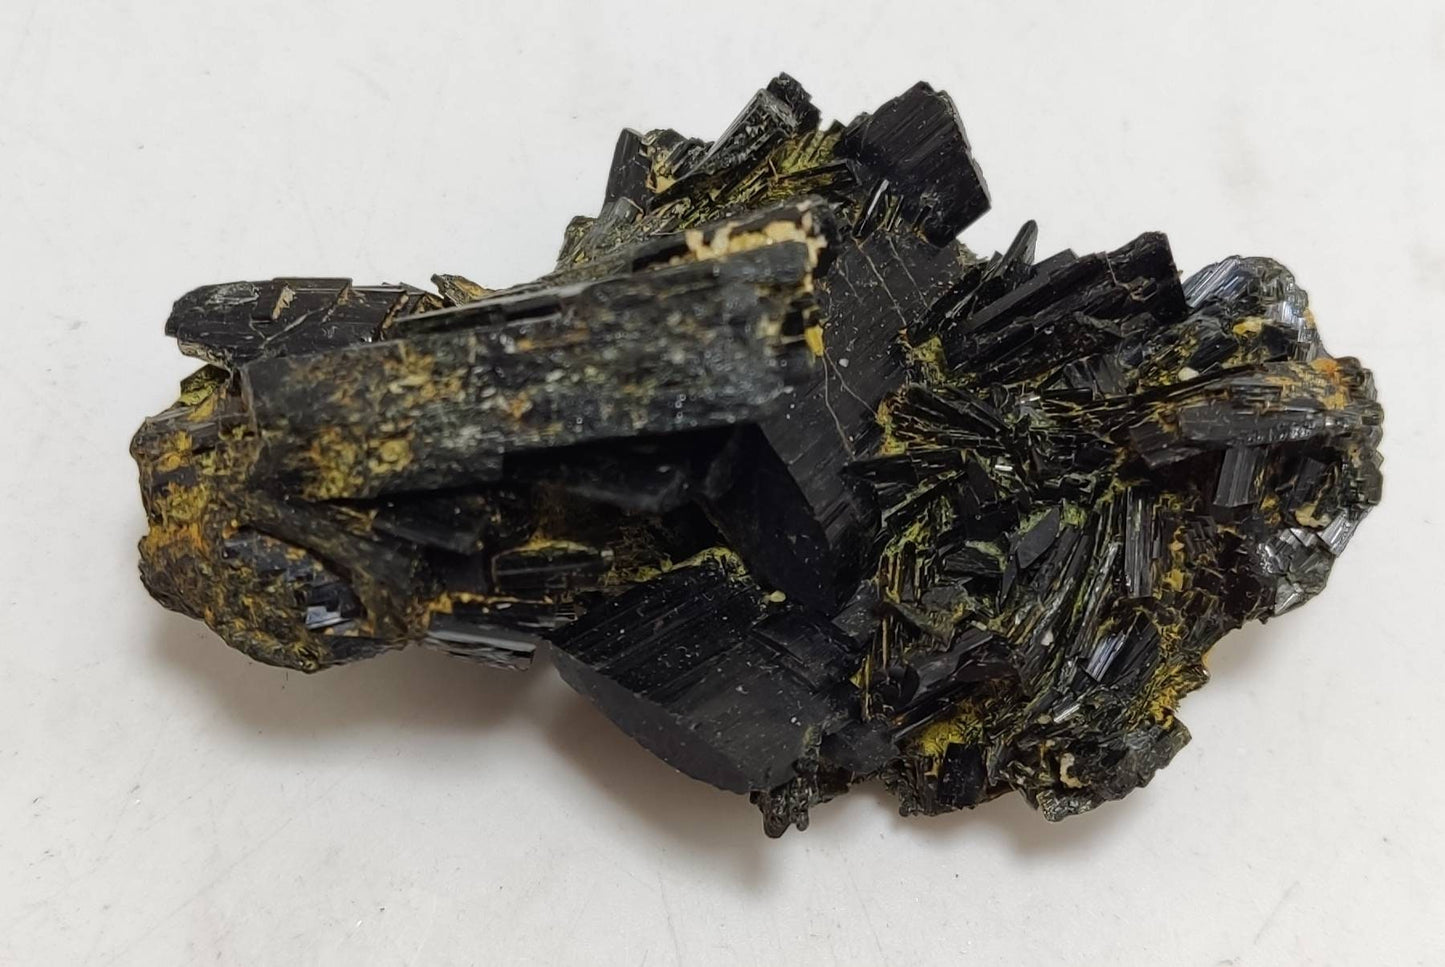 Single beautiful aesthetic aegirine crystals cluster specimen 45 grams